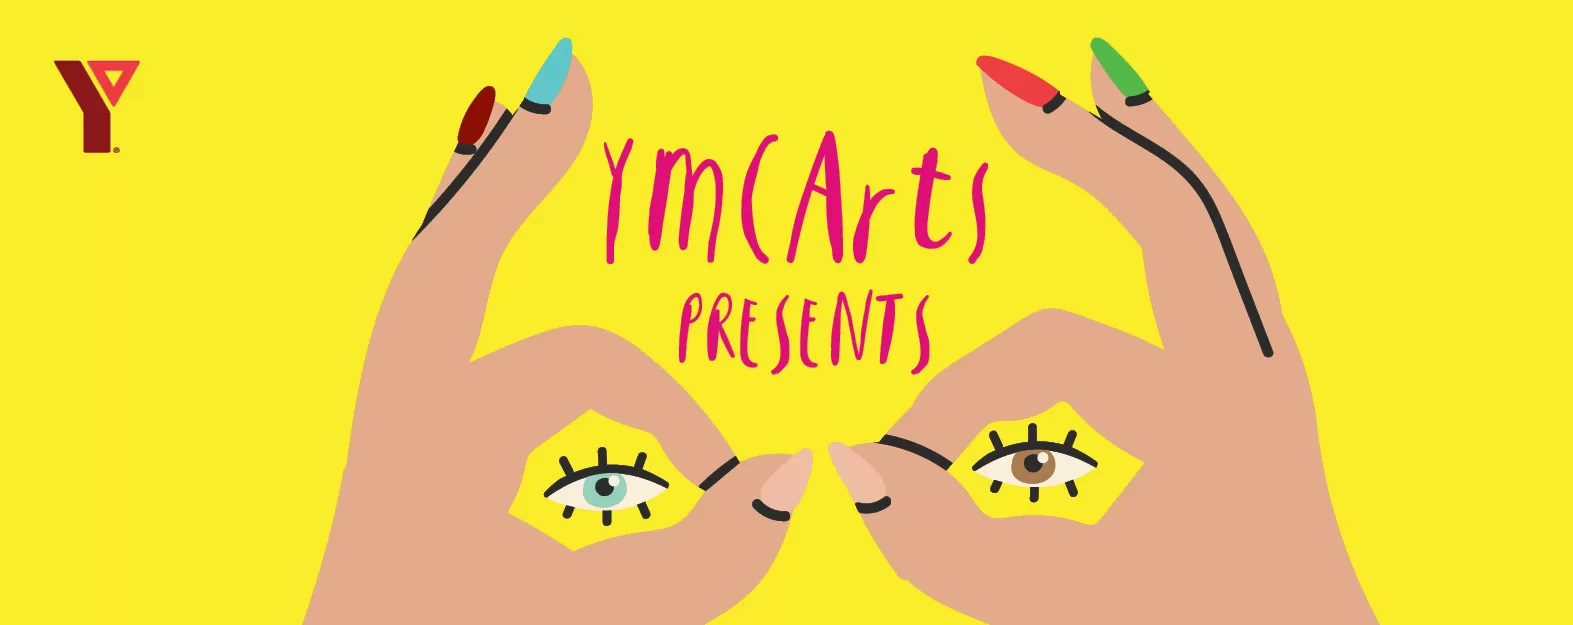 YMCArts Presents